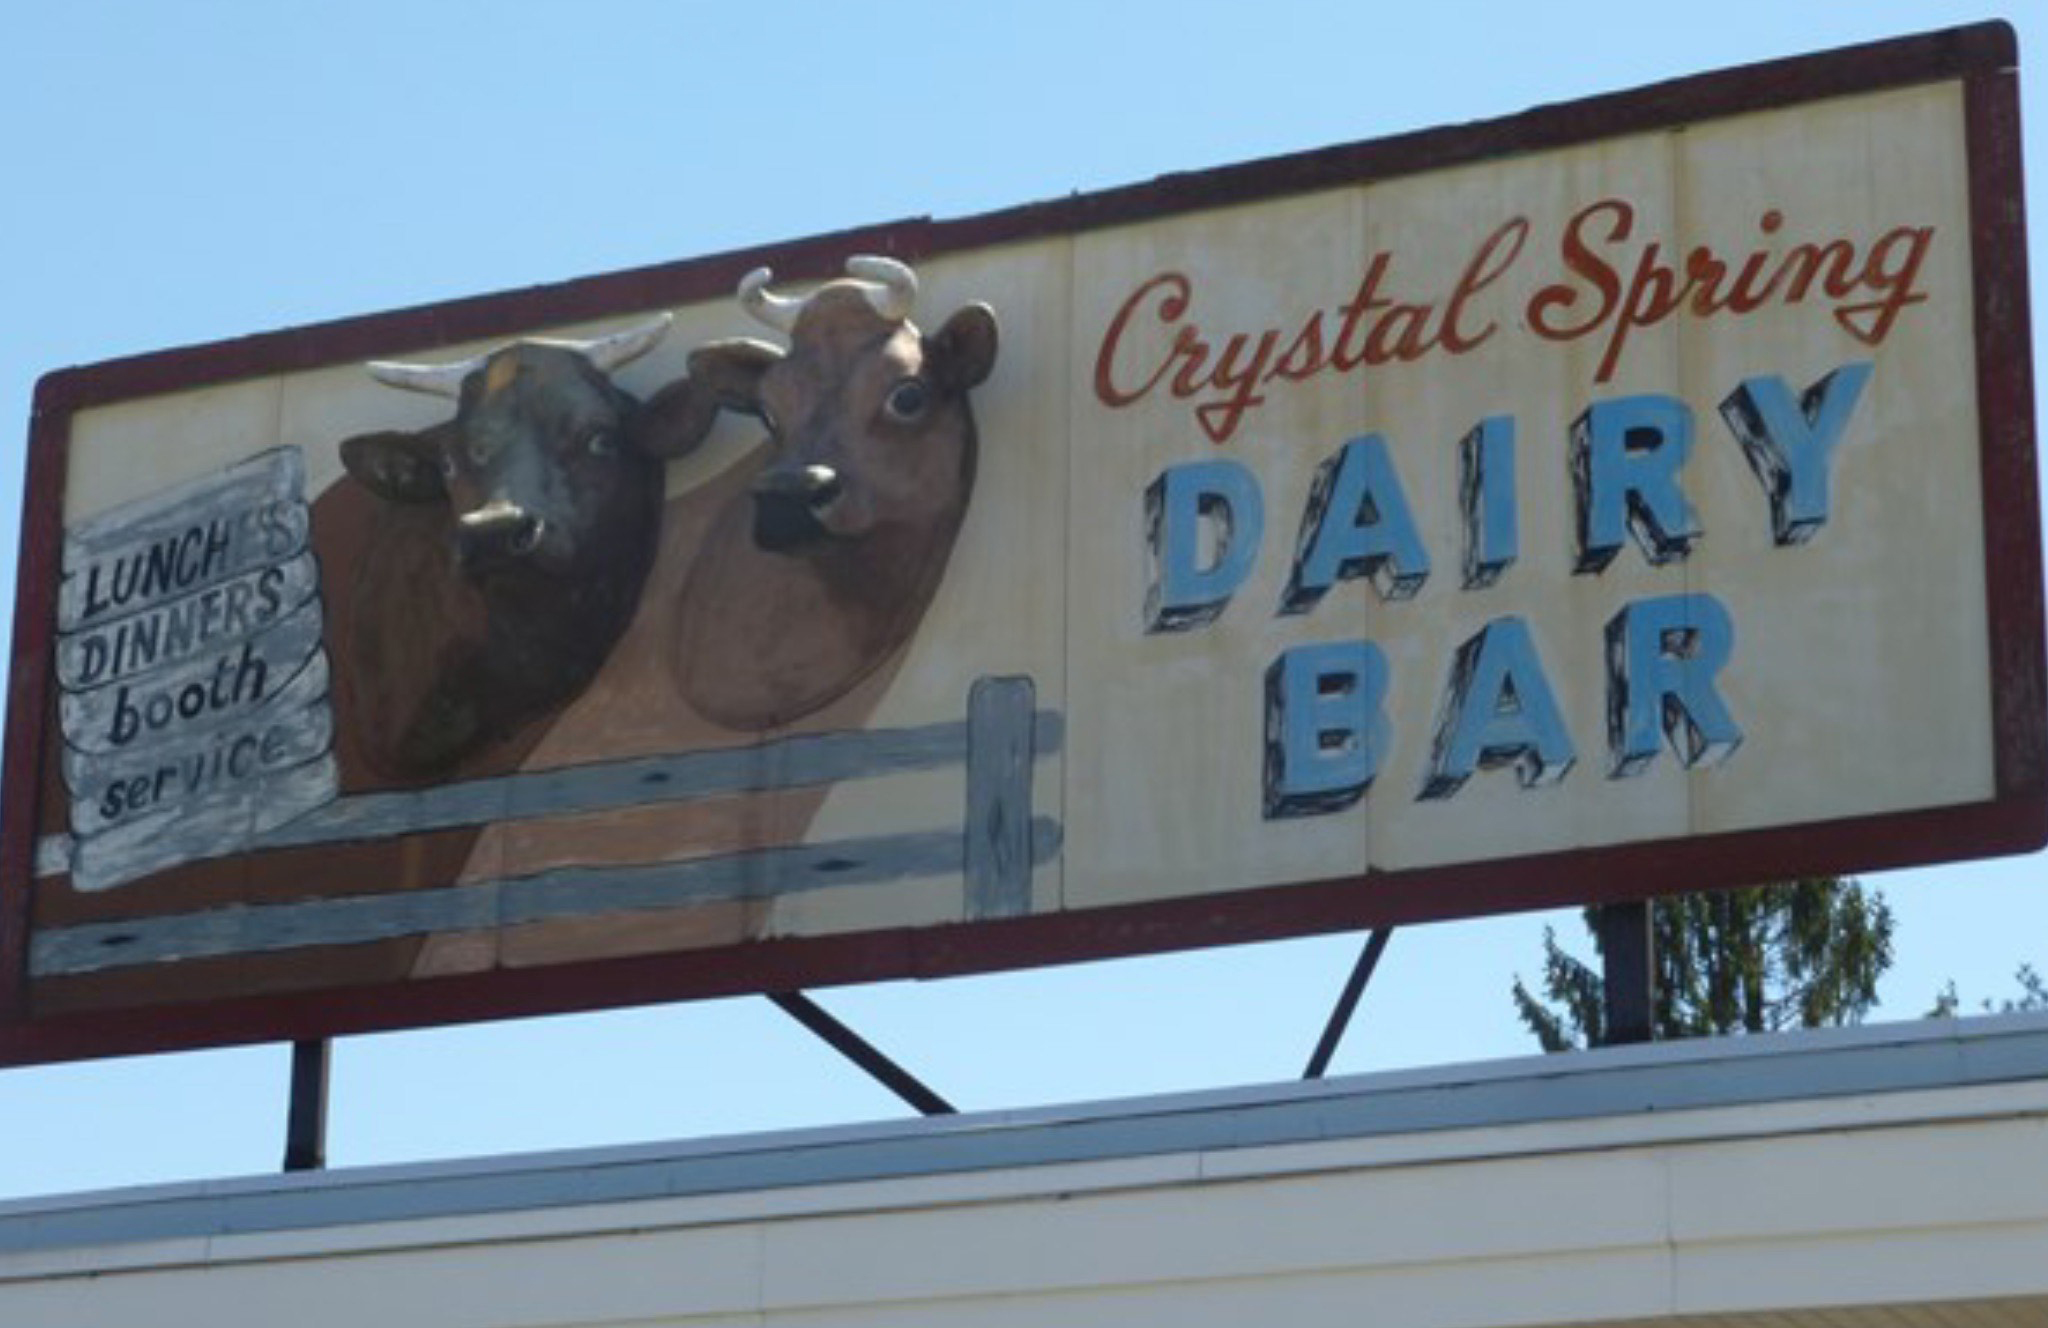 Crystal Springs Dairy Bar